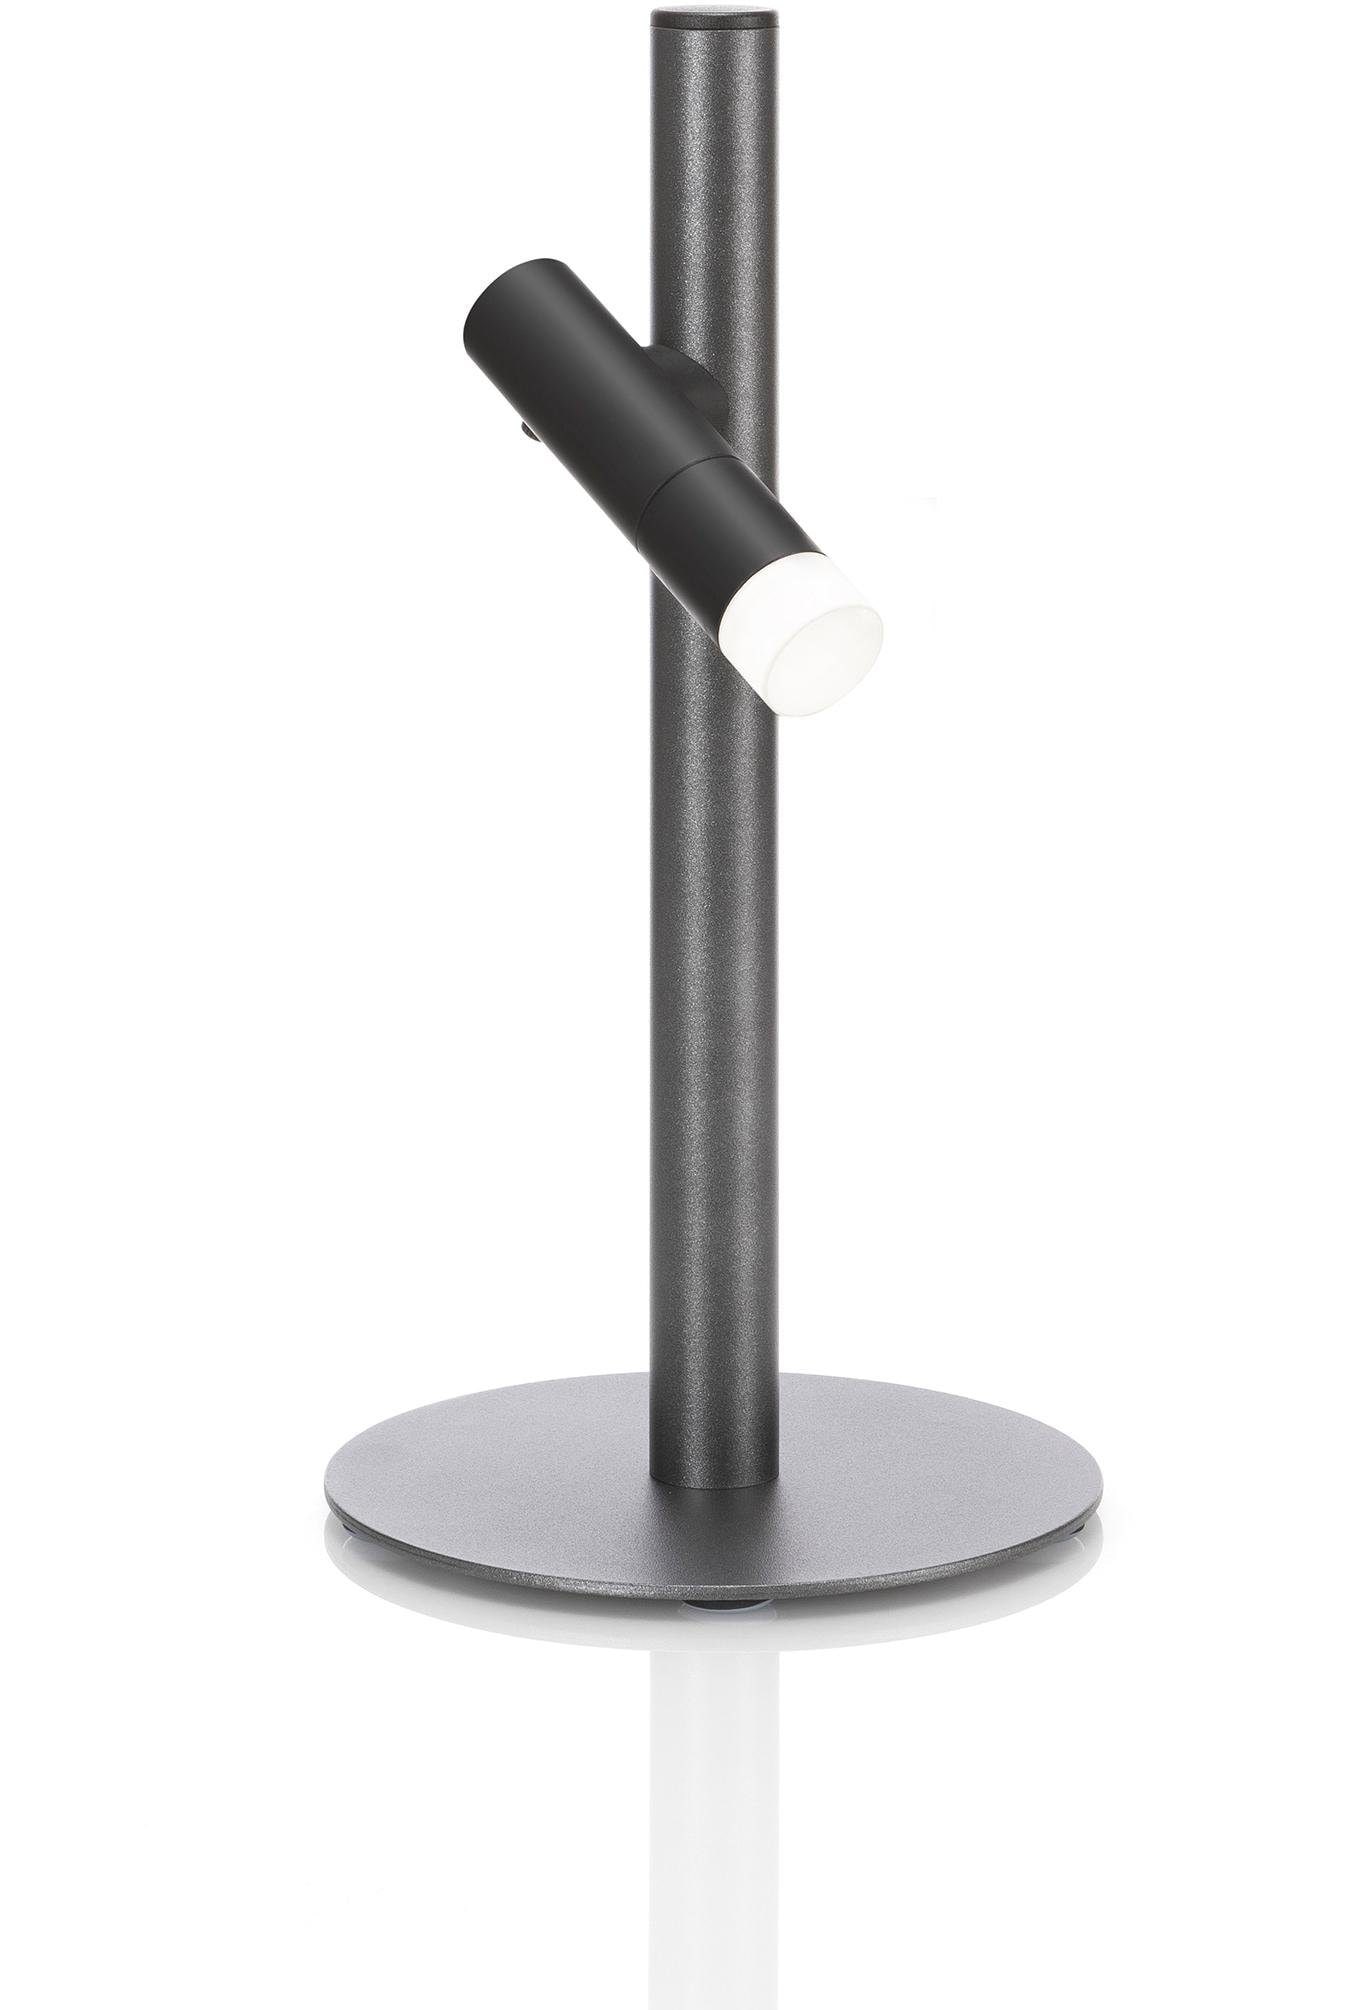 EVOTEC Gartenleuchte »PAUL - Grilleuchte, Taschenleuchte, Stehleuchte, Tischleuchte«, 1 flammig, Leuchtmittel LED-Board | LED fest integriert, ideal zum Grillen, Multiring mit Flaschenhalter + 3 Haken